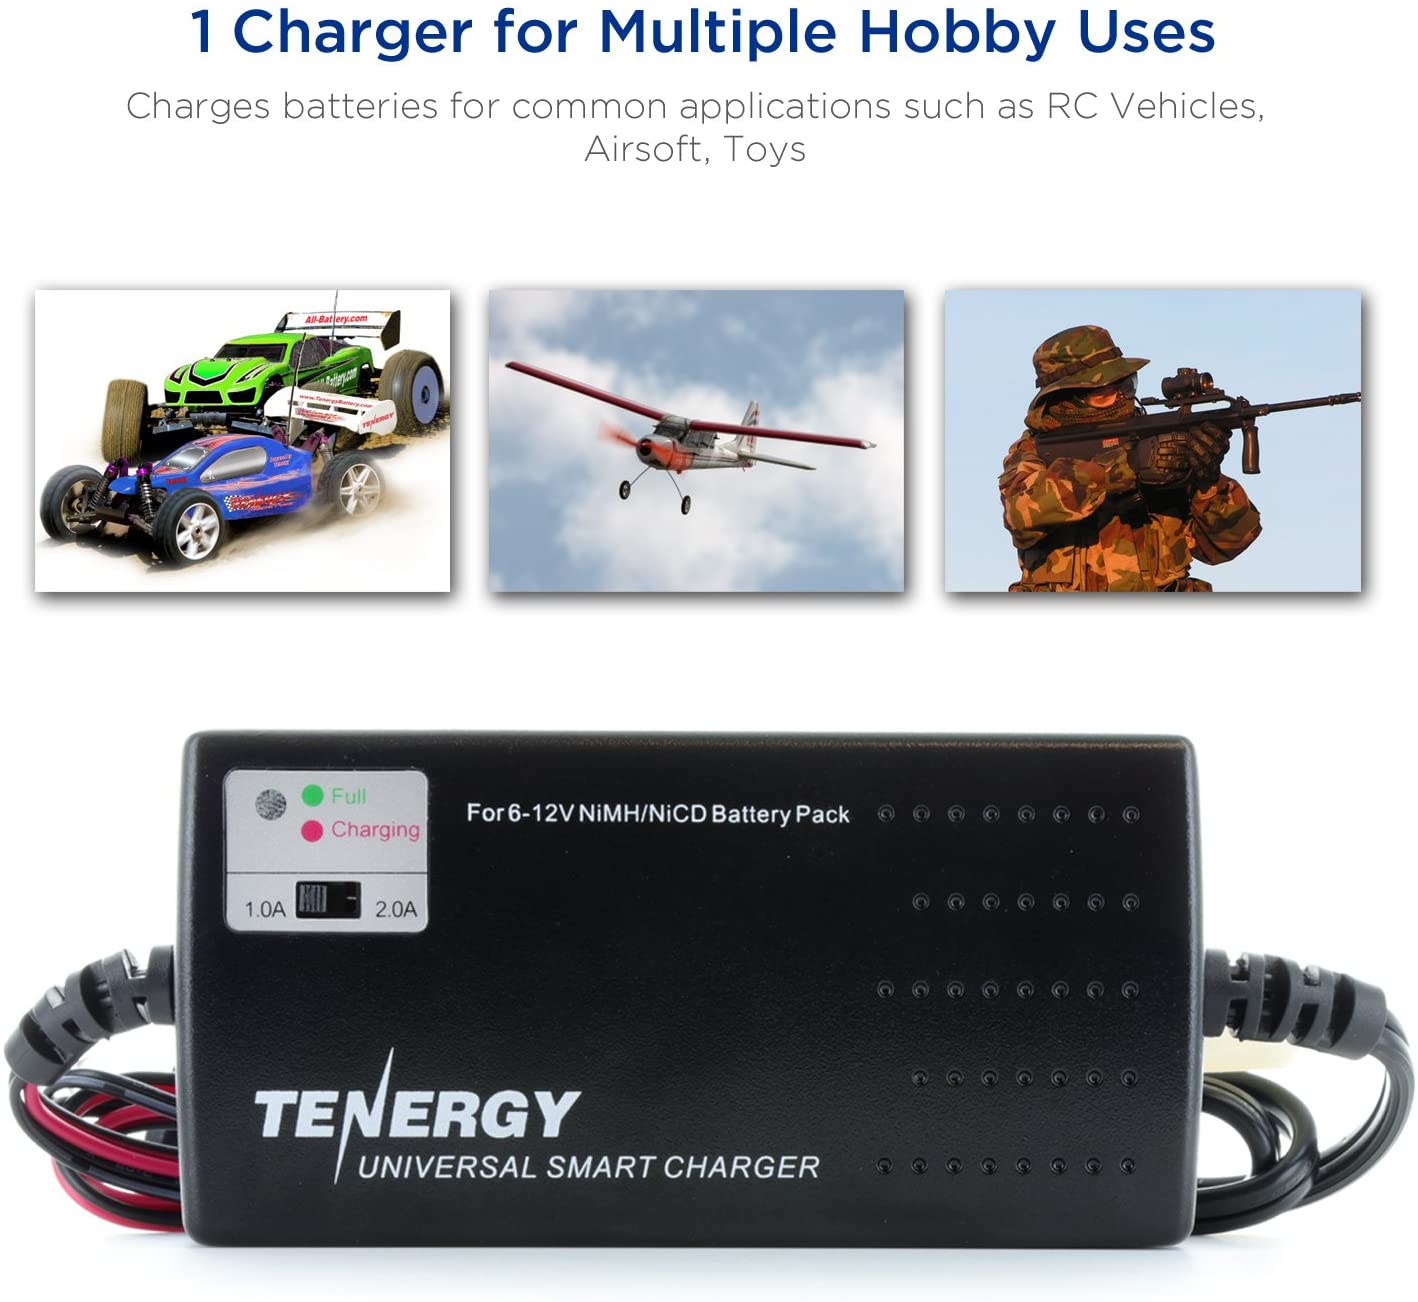 Tenergy Universal Smart Charger For Nimh/Nicd Battery Packs (6V - 12V)